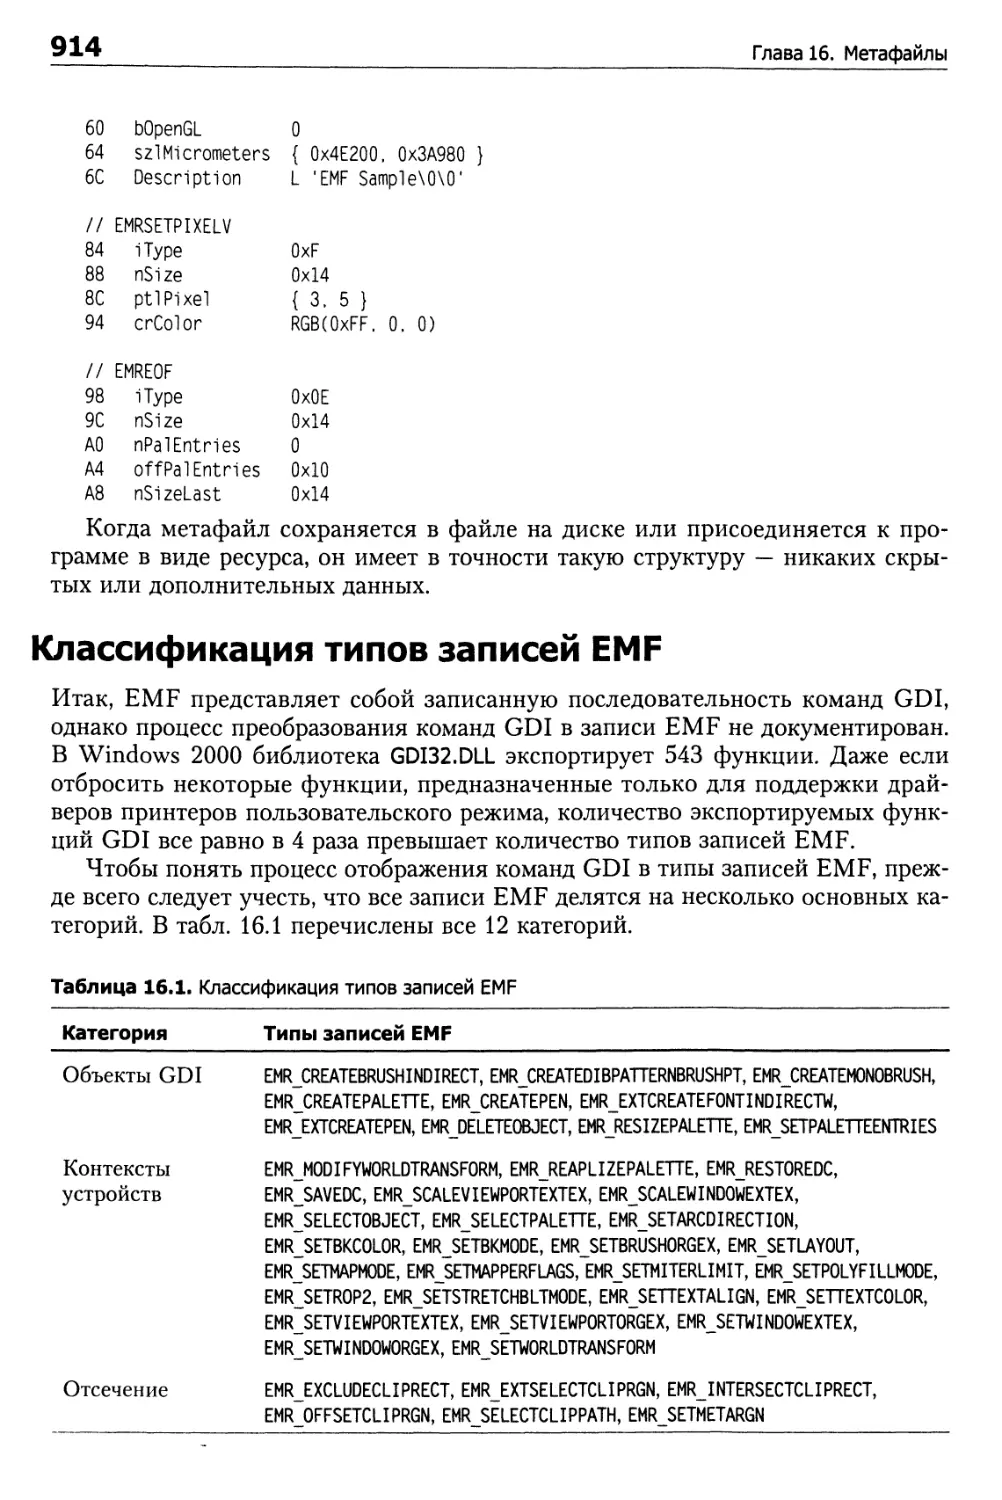 Классификация типов записей EMF